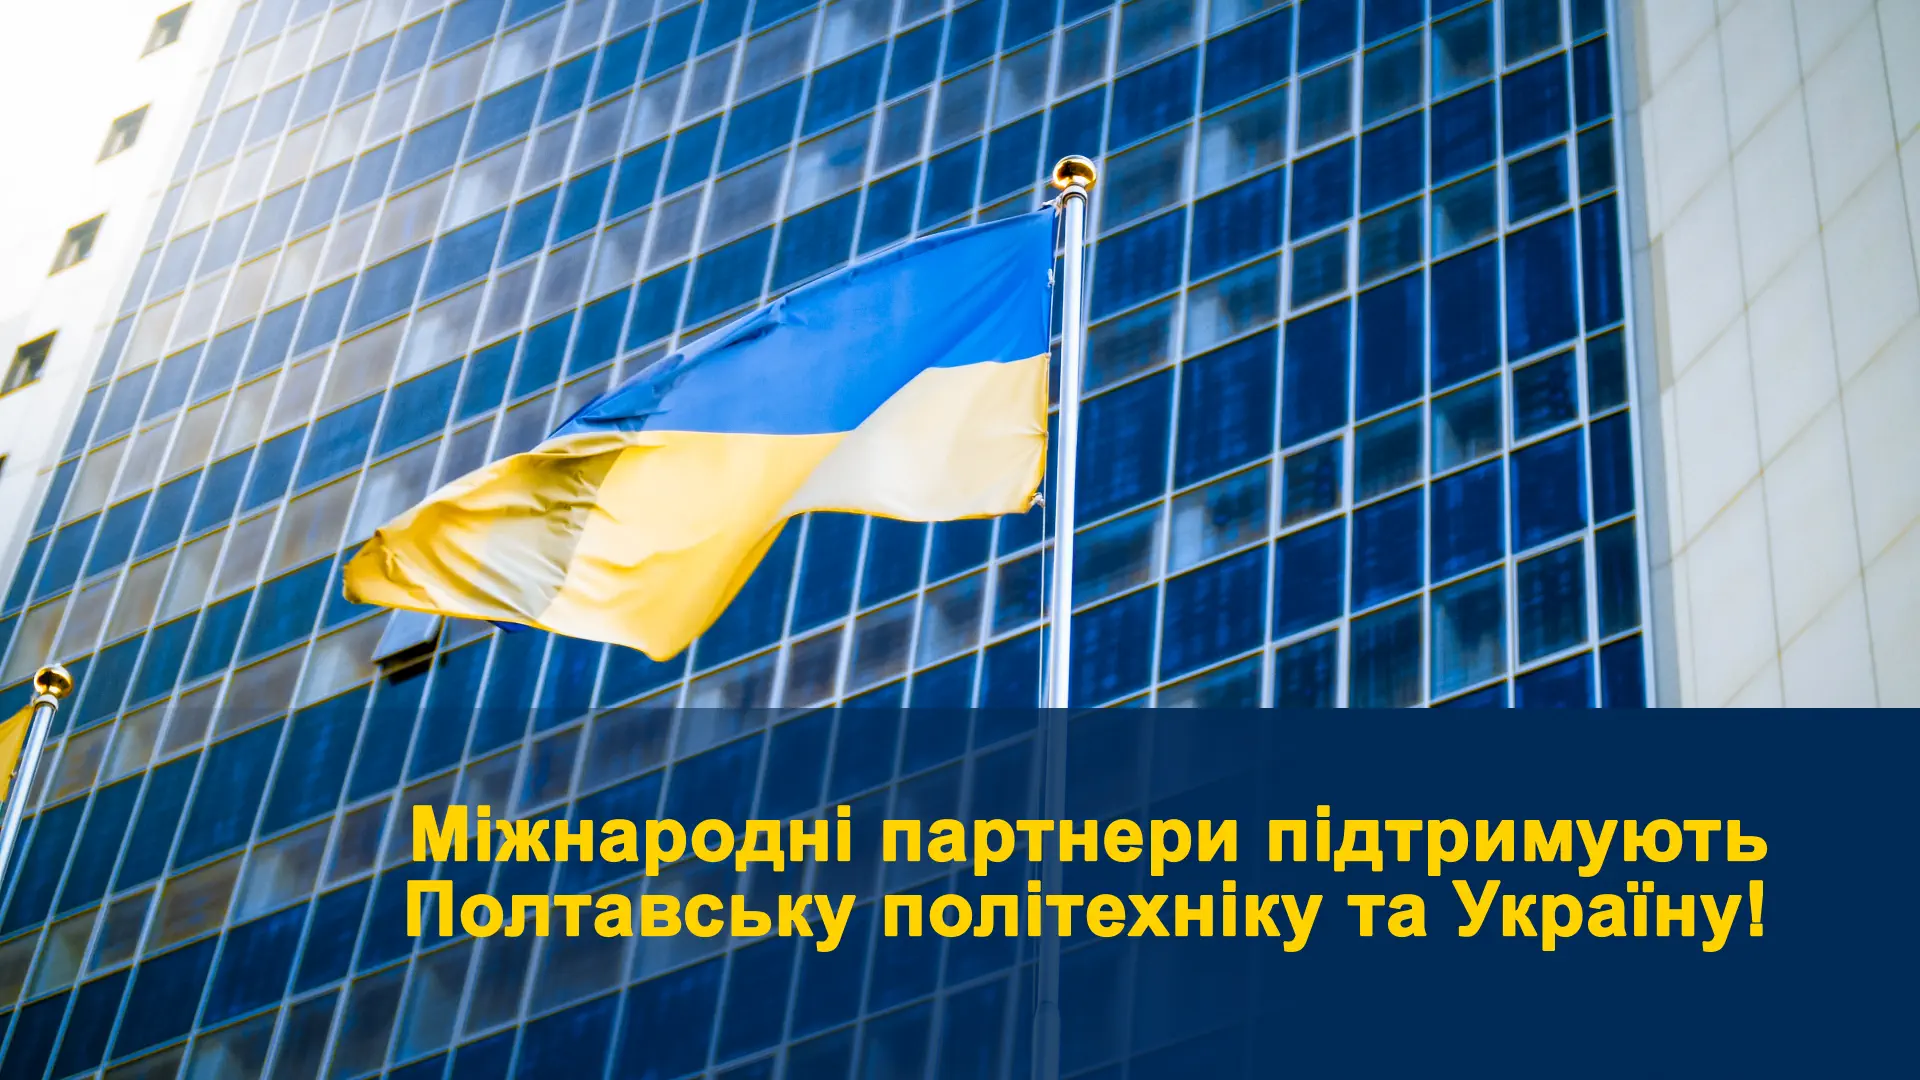 Міжнародні партнери підтримують Полтавську політехніку та Україну